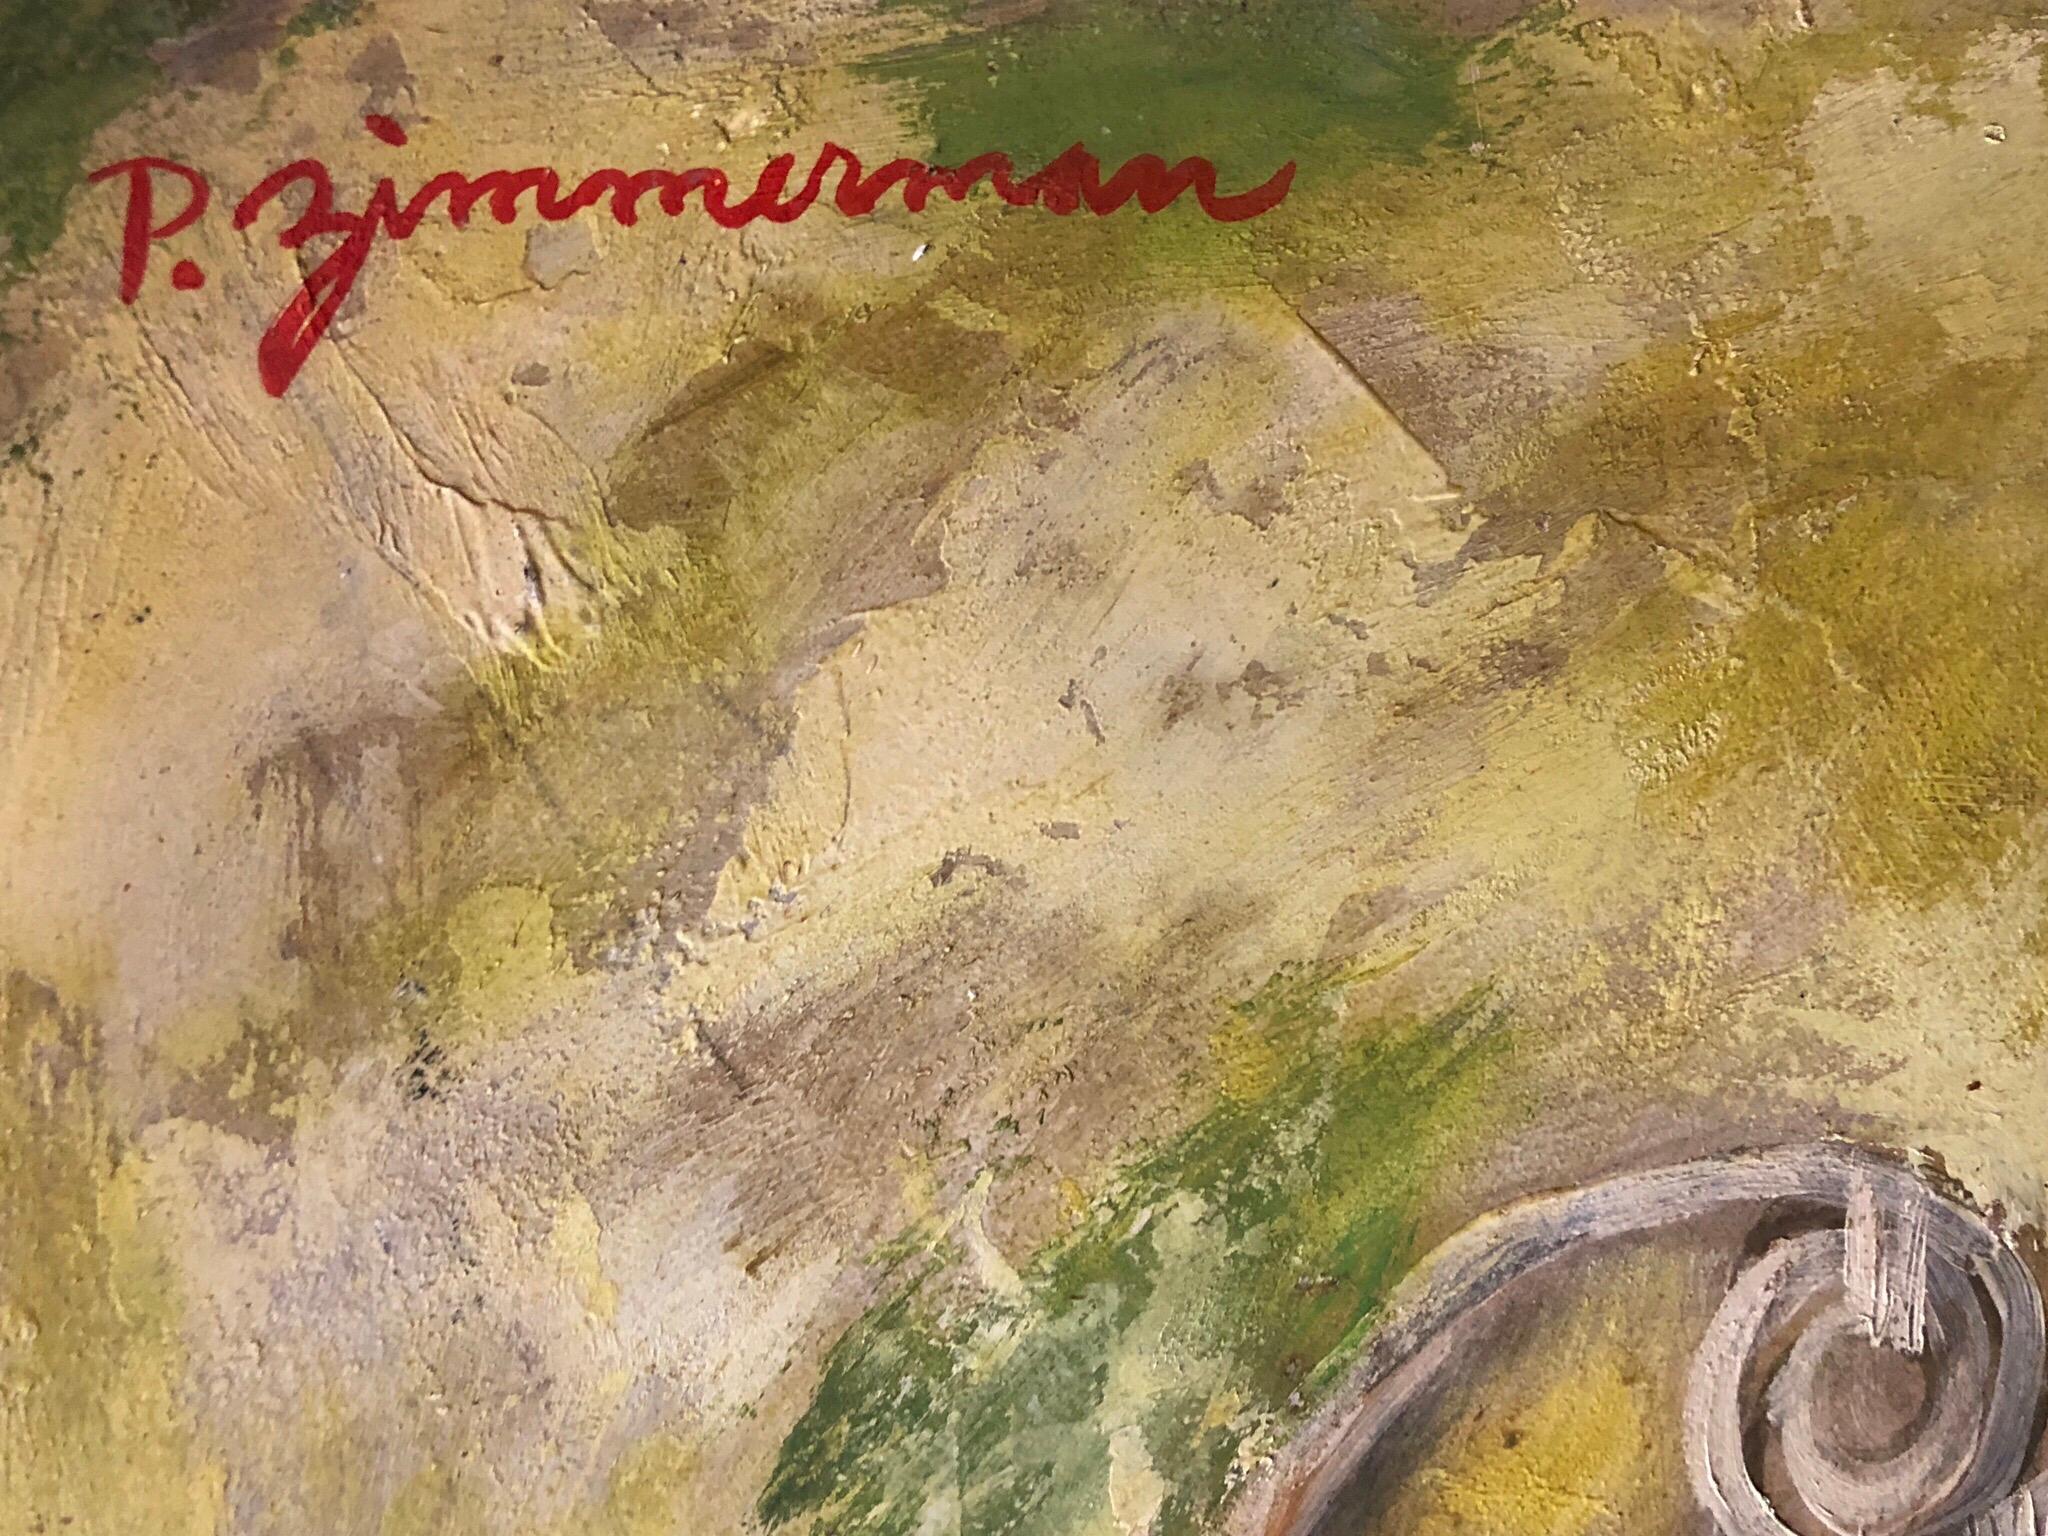 Öl auf Malerkarton, 20. Jahrhundert, signiert P. Zimmerman Erinnert an die sozialrealistischen und WPA-Werke von Ben Shahn aus der Mitte des Jahrhunderts und zeigt ein Stillleben einer Küchenszene auf dem Tisch. Korbstuhl für Picknick geladen.

Paul